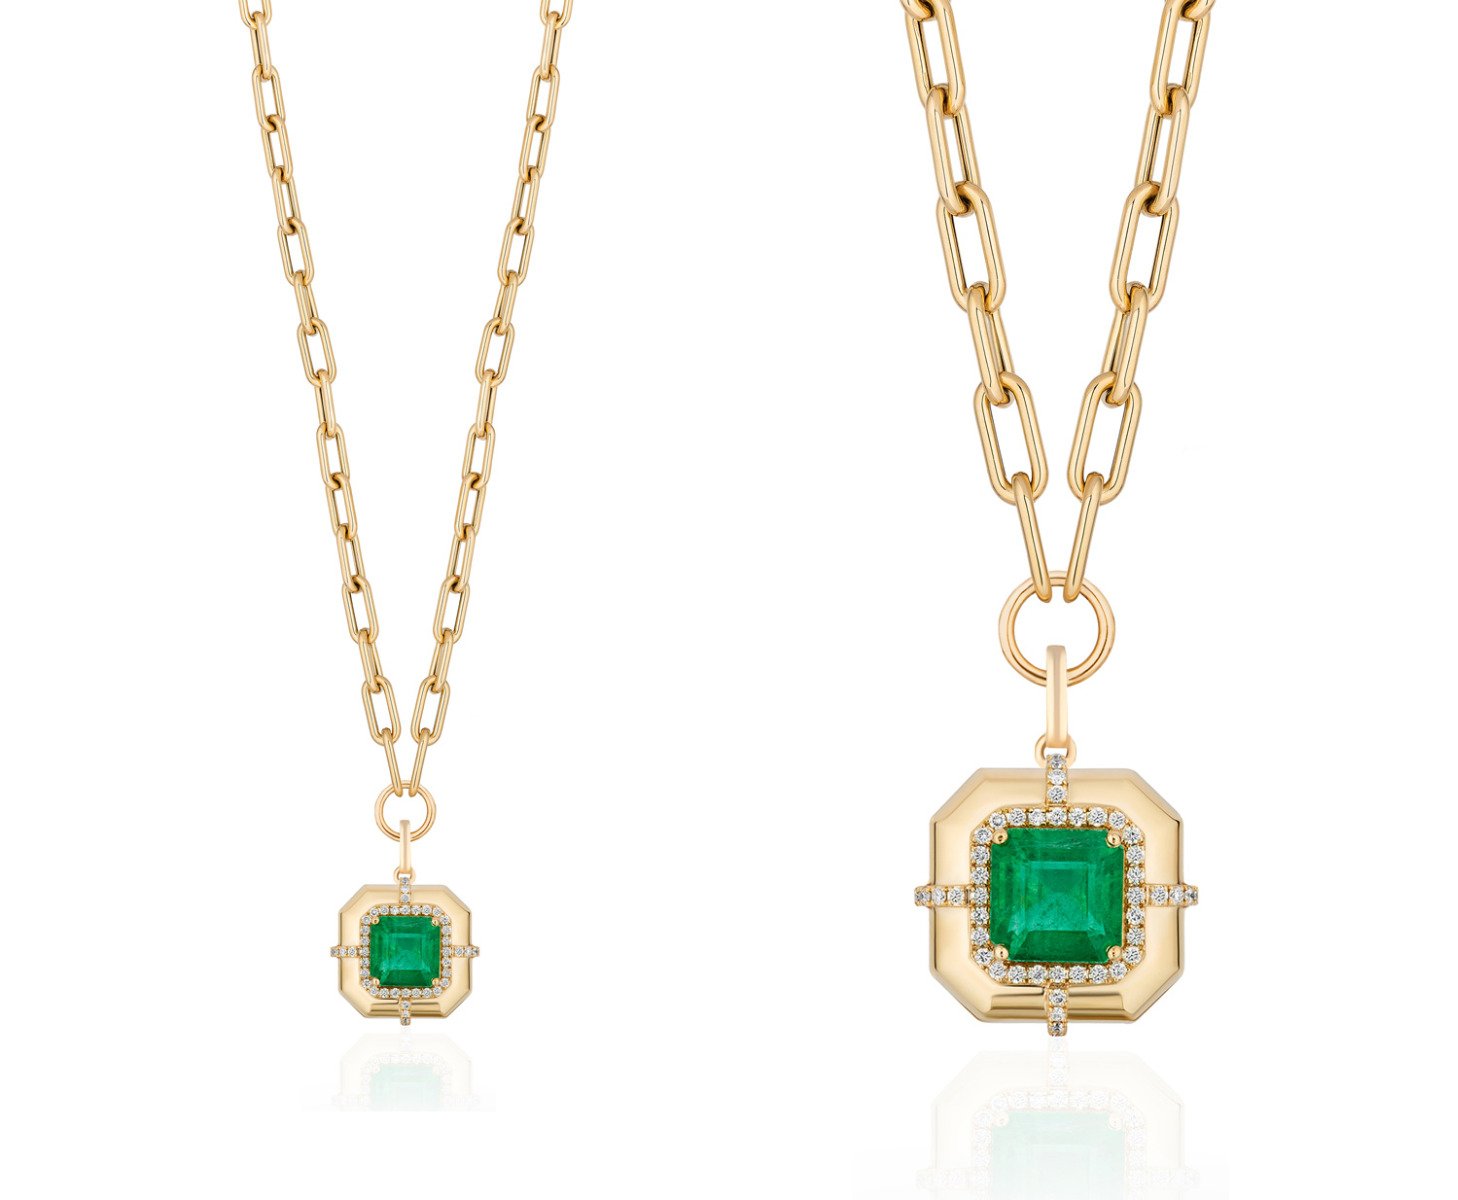 Goshwara "G-One" Emerald Pendant Necklace with Diamonds